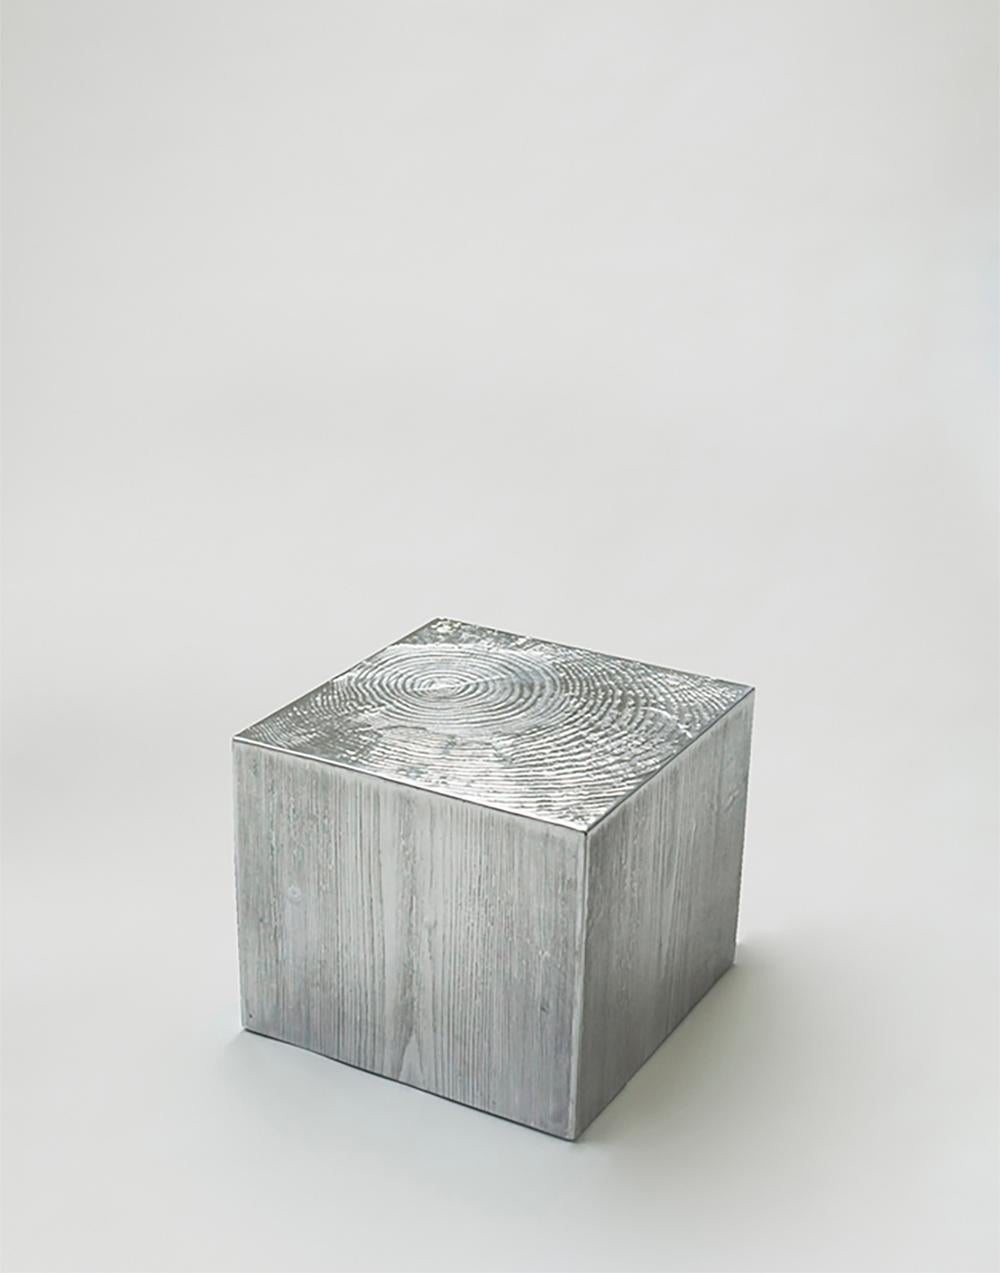 Table basse en fonte d'aluminium avec une forme texturée en bois, conçue par Andrea Salvetti pour Dilmos Milano. 
La table représente un morceau de tronc moulé en aluminium poli. 

Signé par l'artiste.
Convient également pour